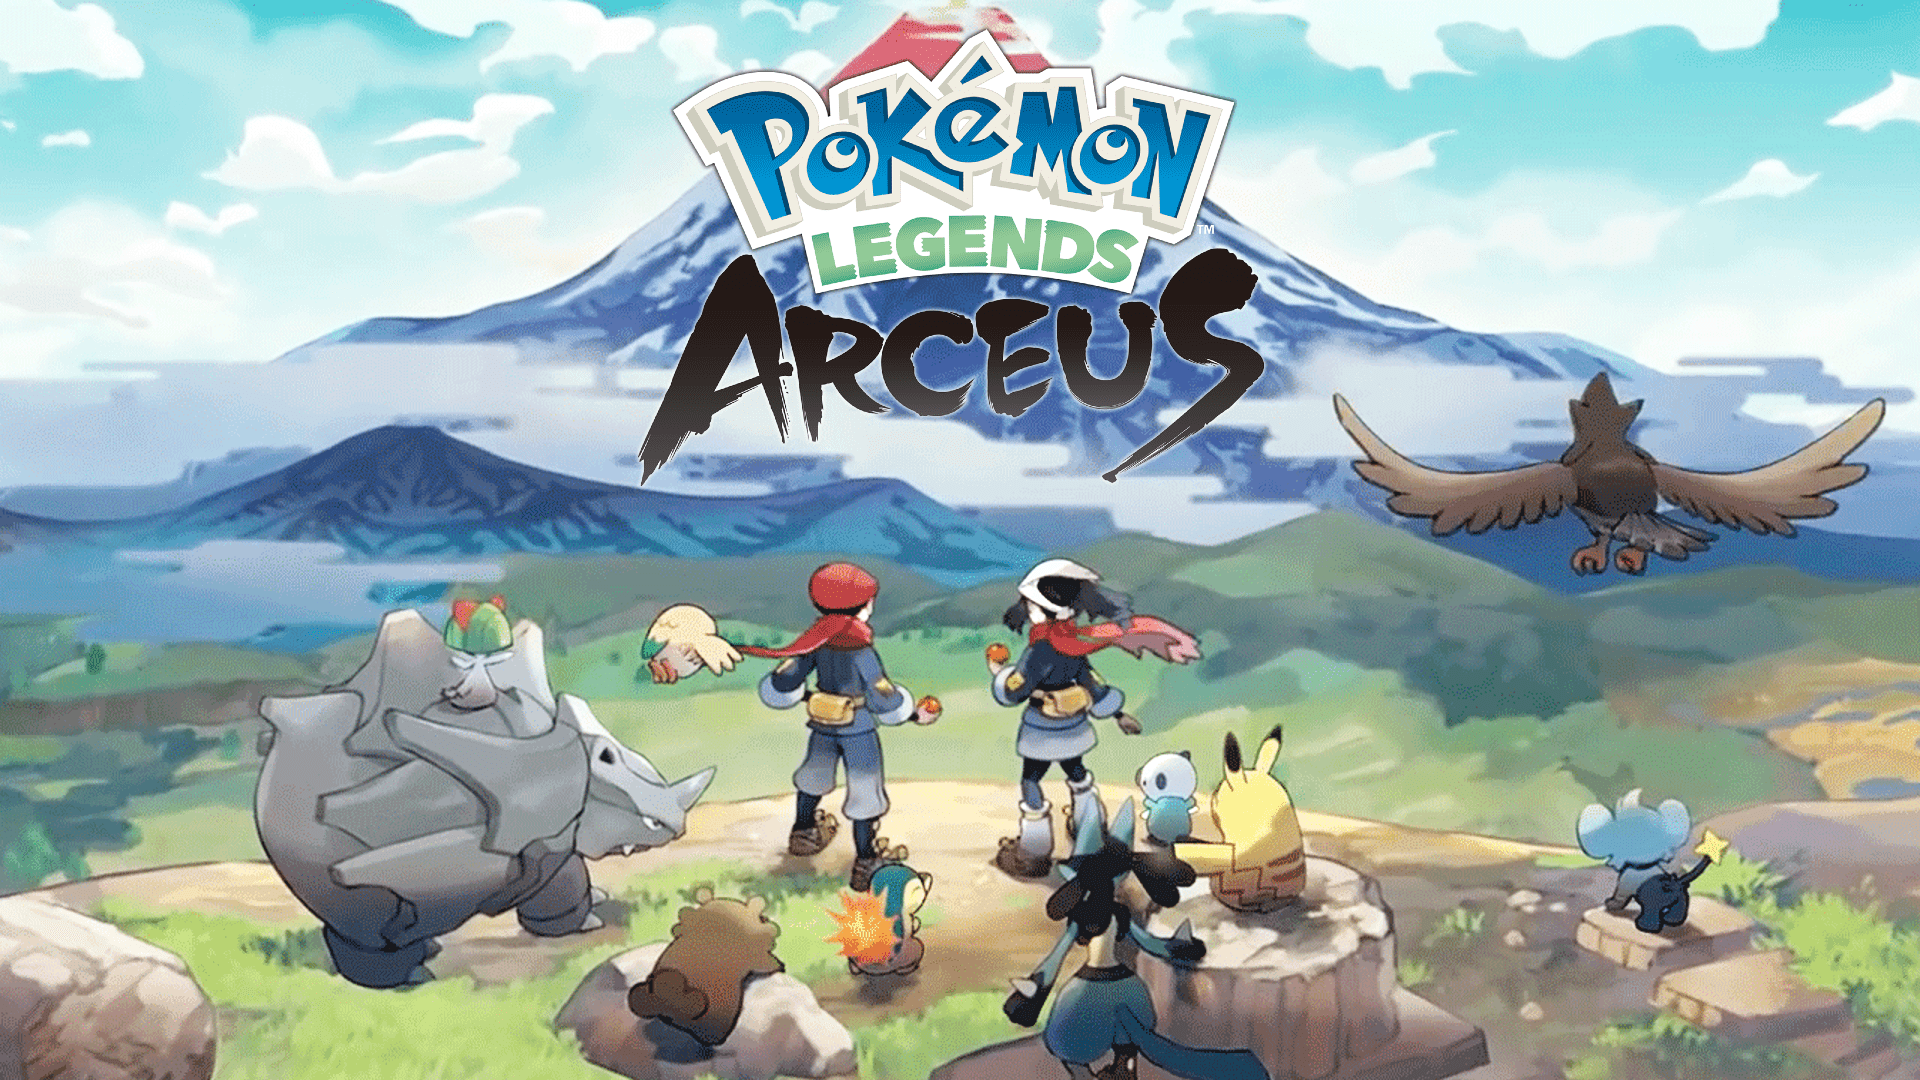 Dawn's Blue Hair in Pokemon Legends: Arceus - wide 2